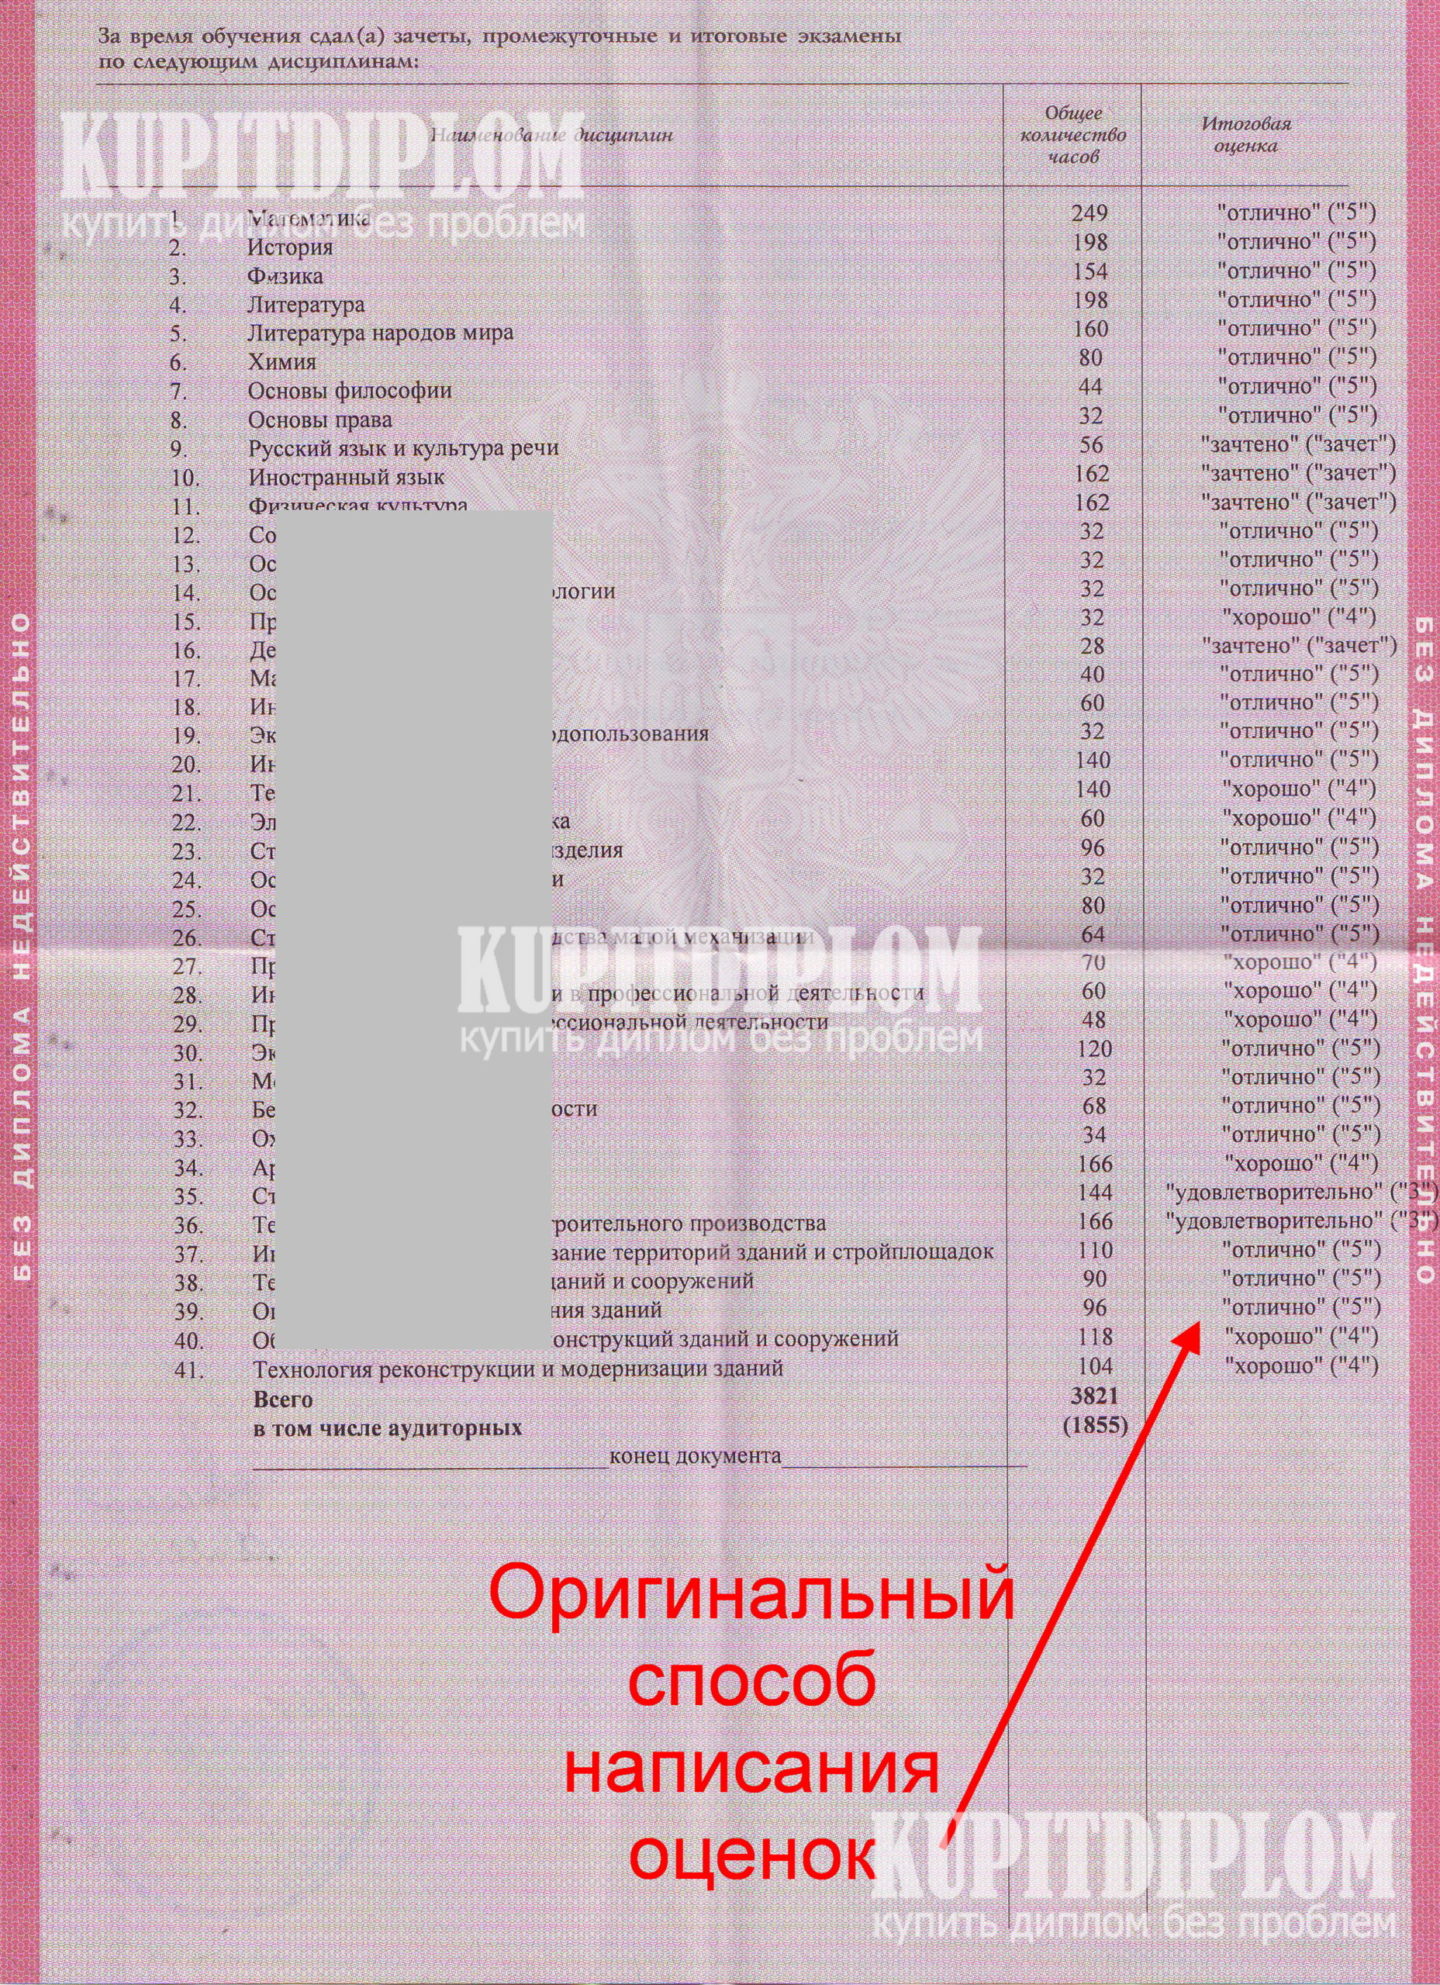 Предметы в приложении диплома Владимирского строительного колледжа (2005 г.)